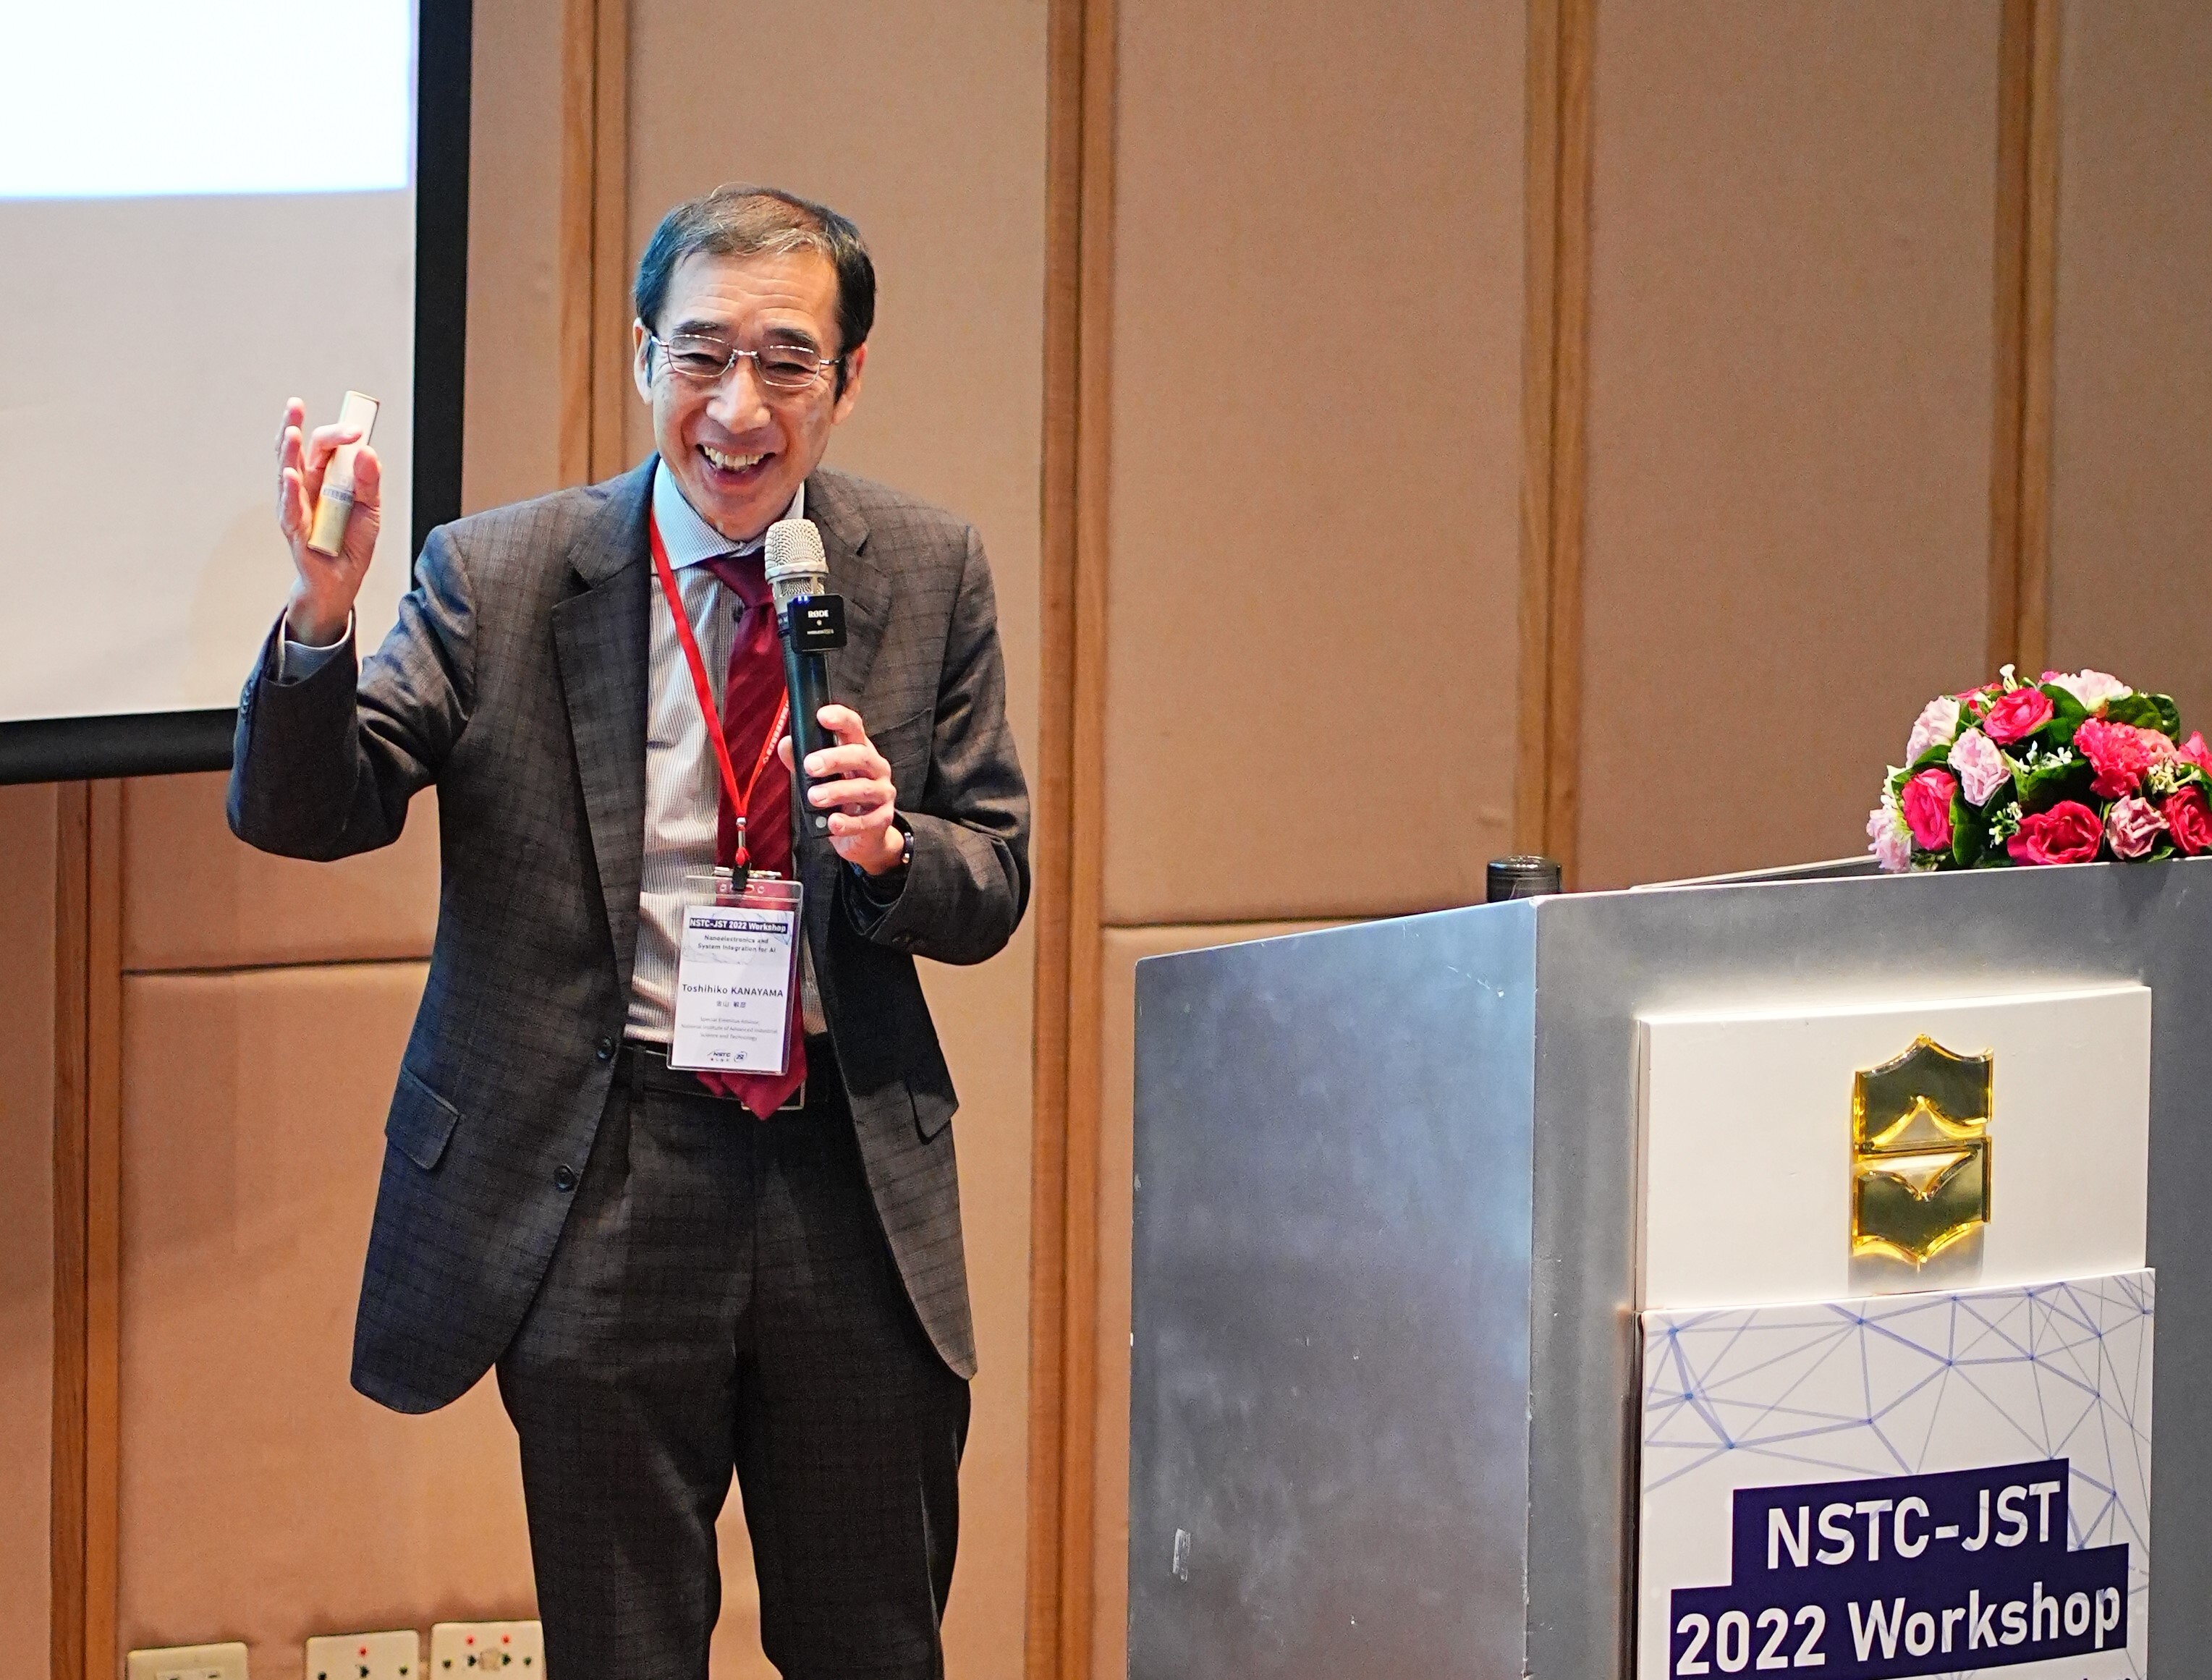 日本 JST 理事森本茂雄表示，很開心能親自來到臺南參加研討會，期待臺日合作能再創成功案例